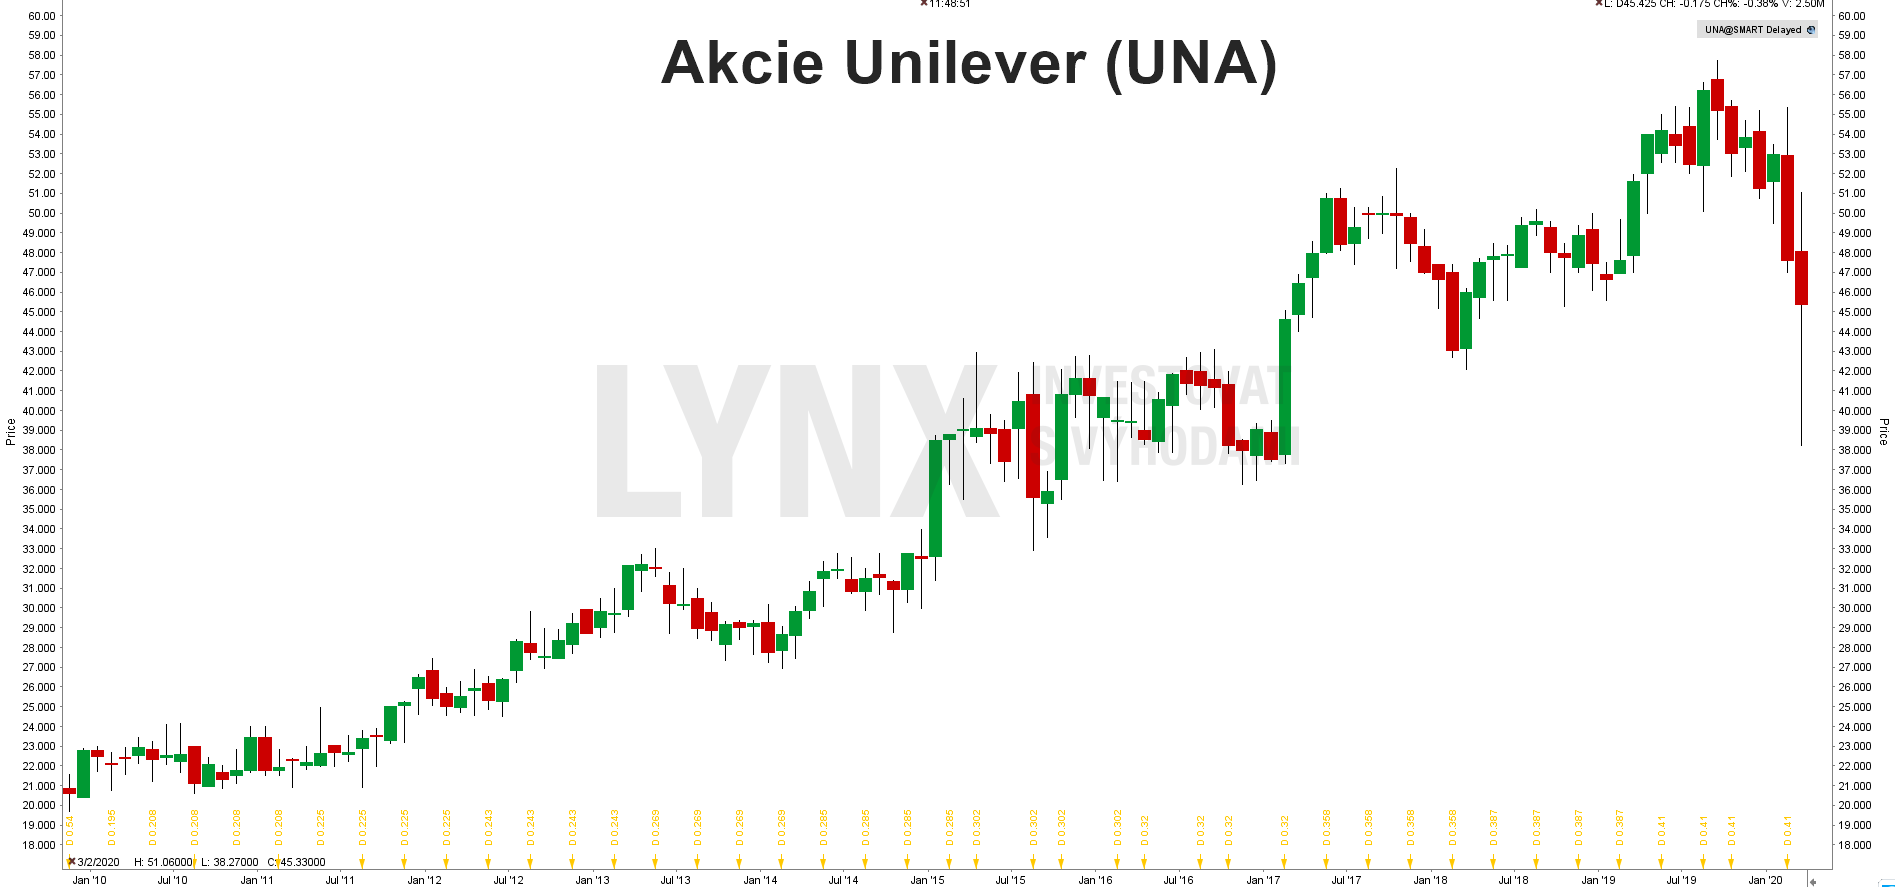 Graf akcie Unilever (UNA)